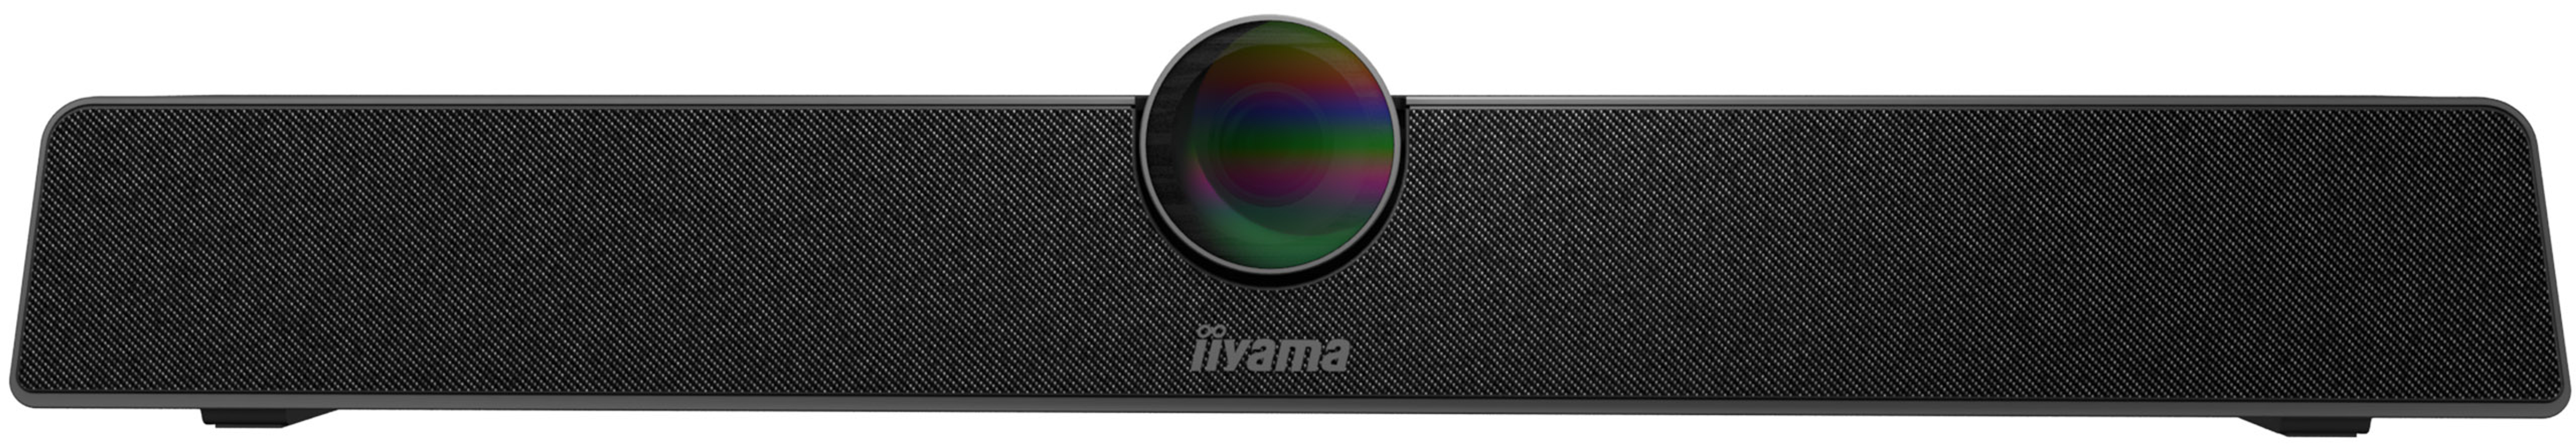 UC IIYAMA Webcam CAM120ULB-1